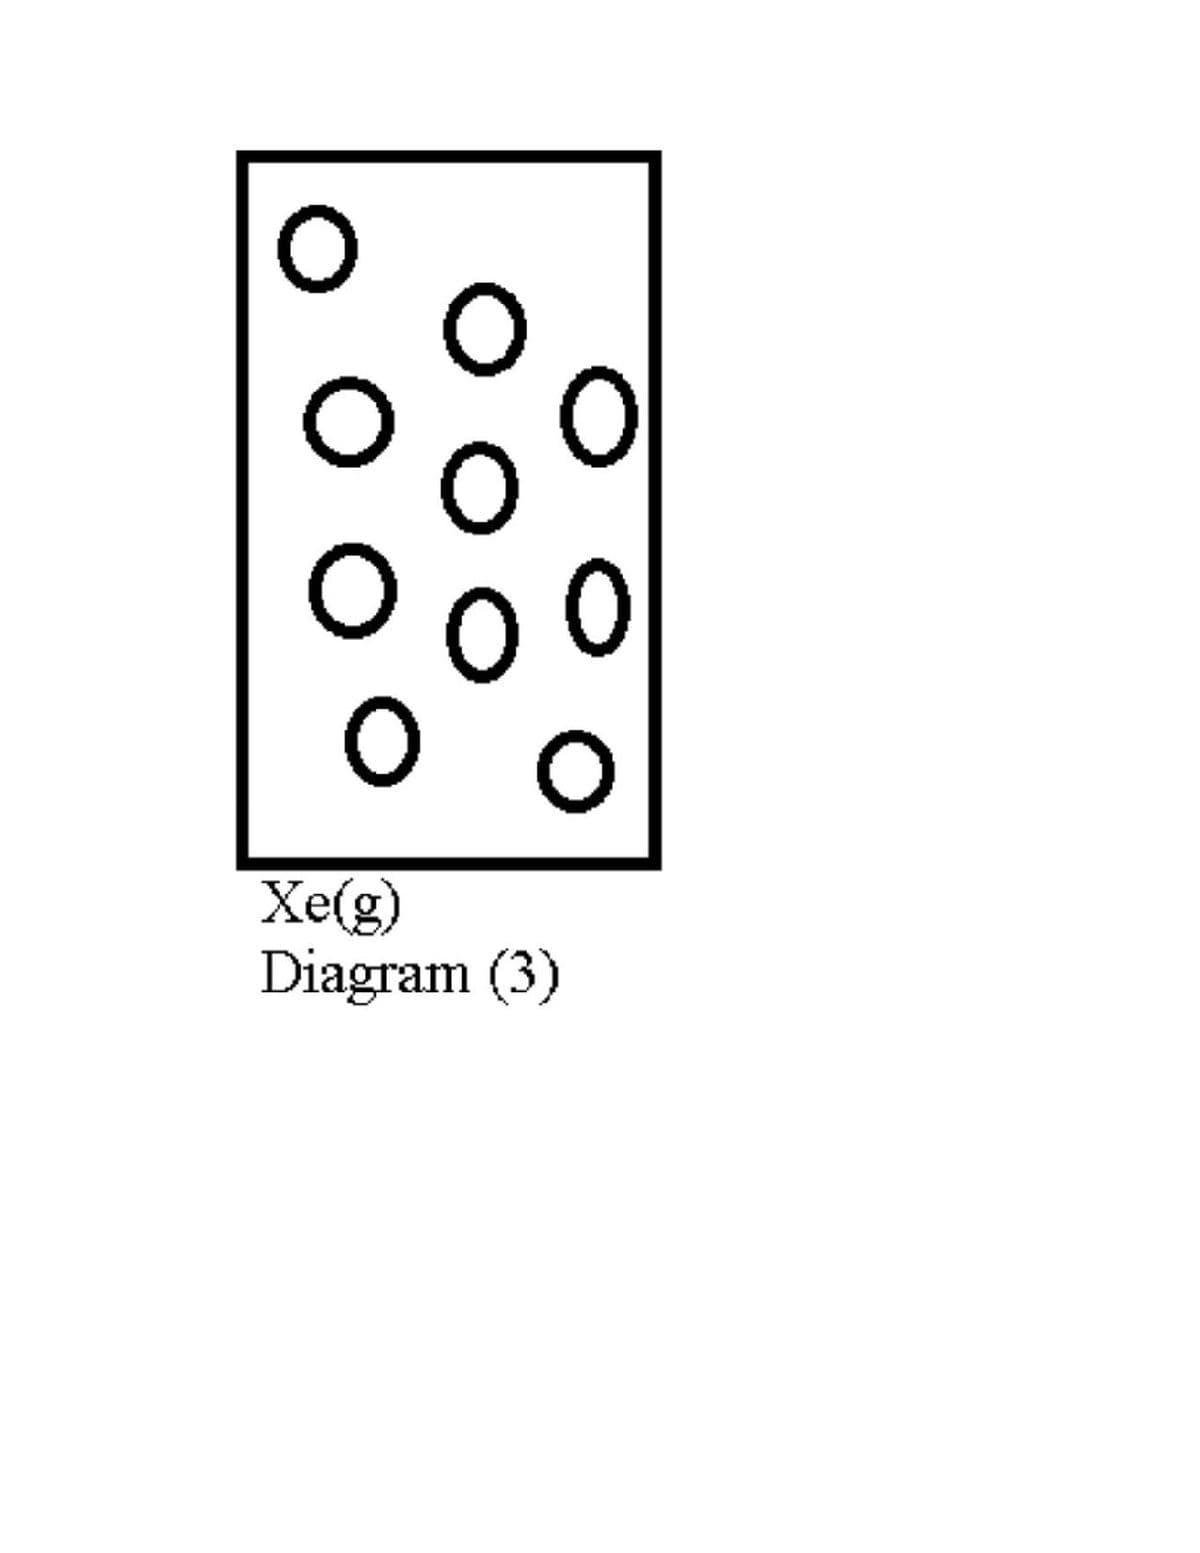 Xe(g)
Diagram (3)
